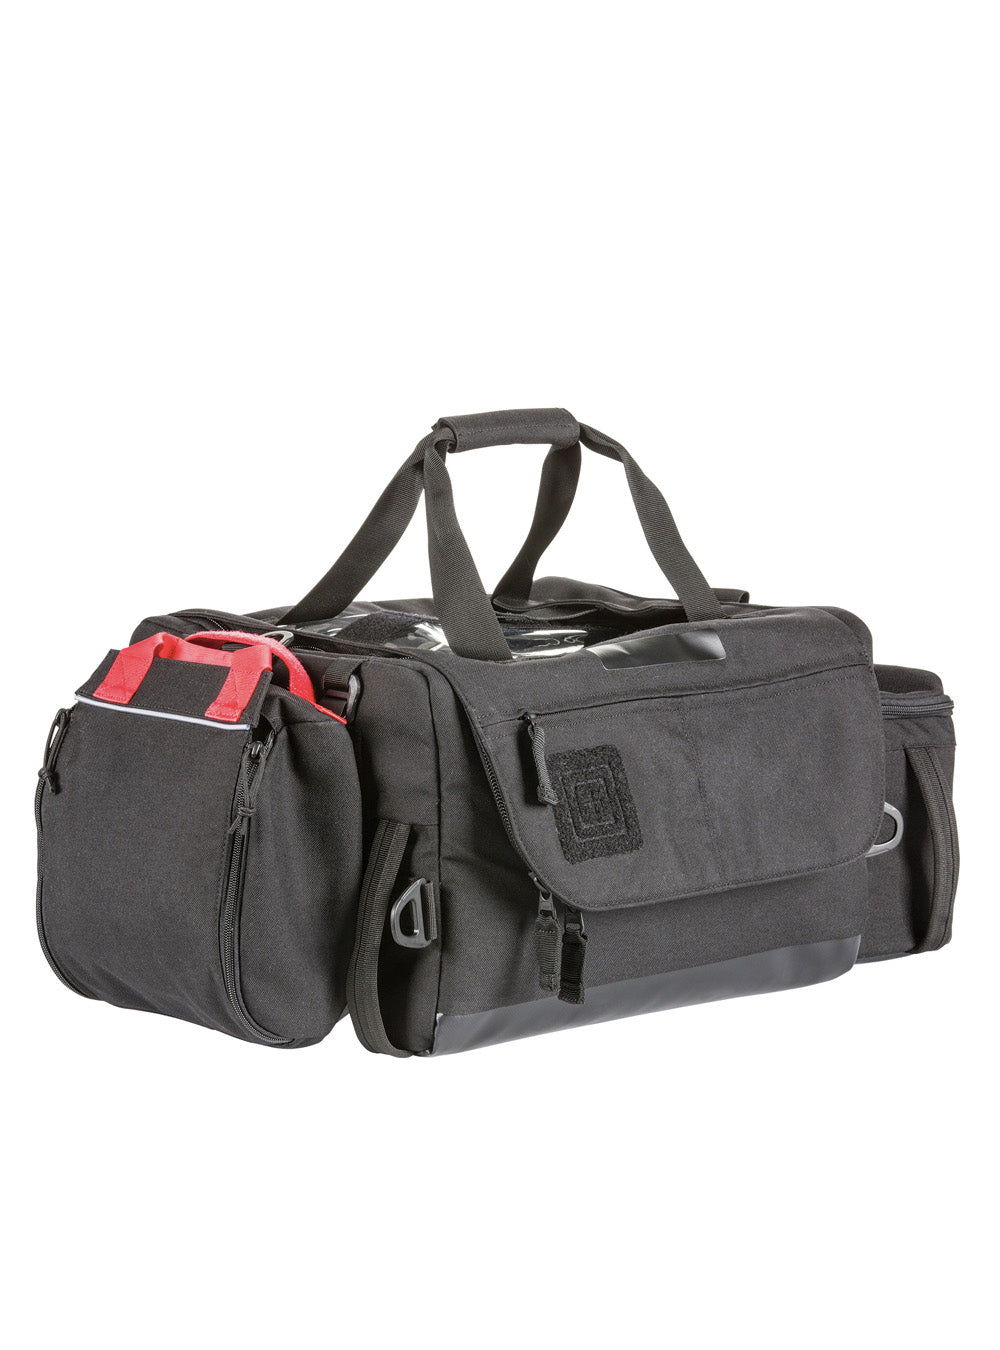 5.11 Tactical ALS/BLS Duffel Bag - TacSource